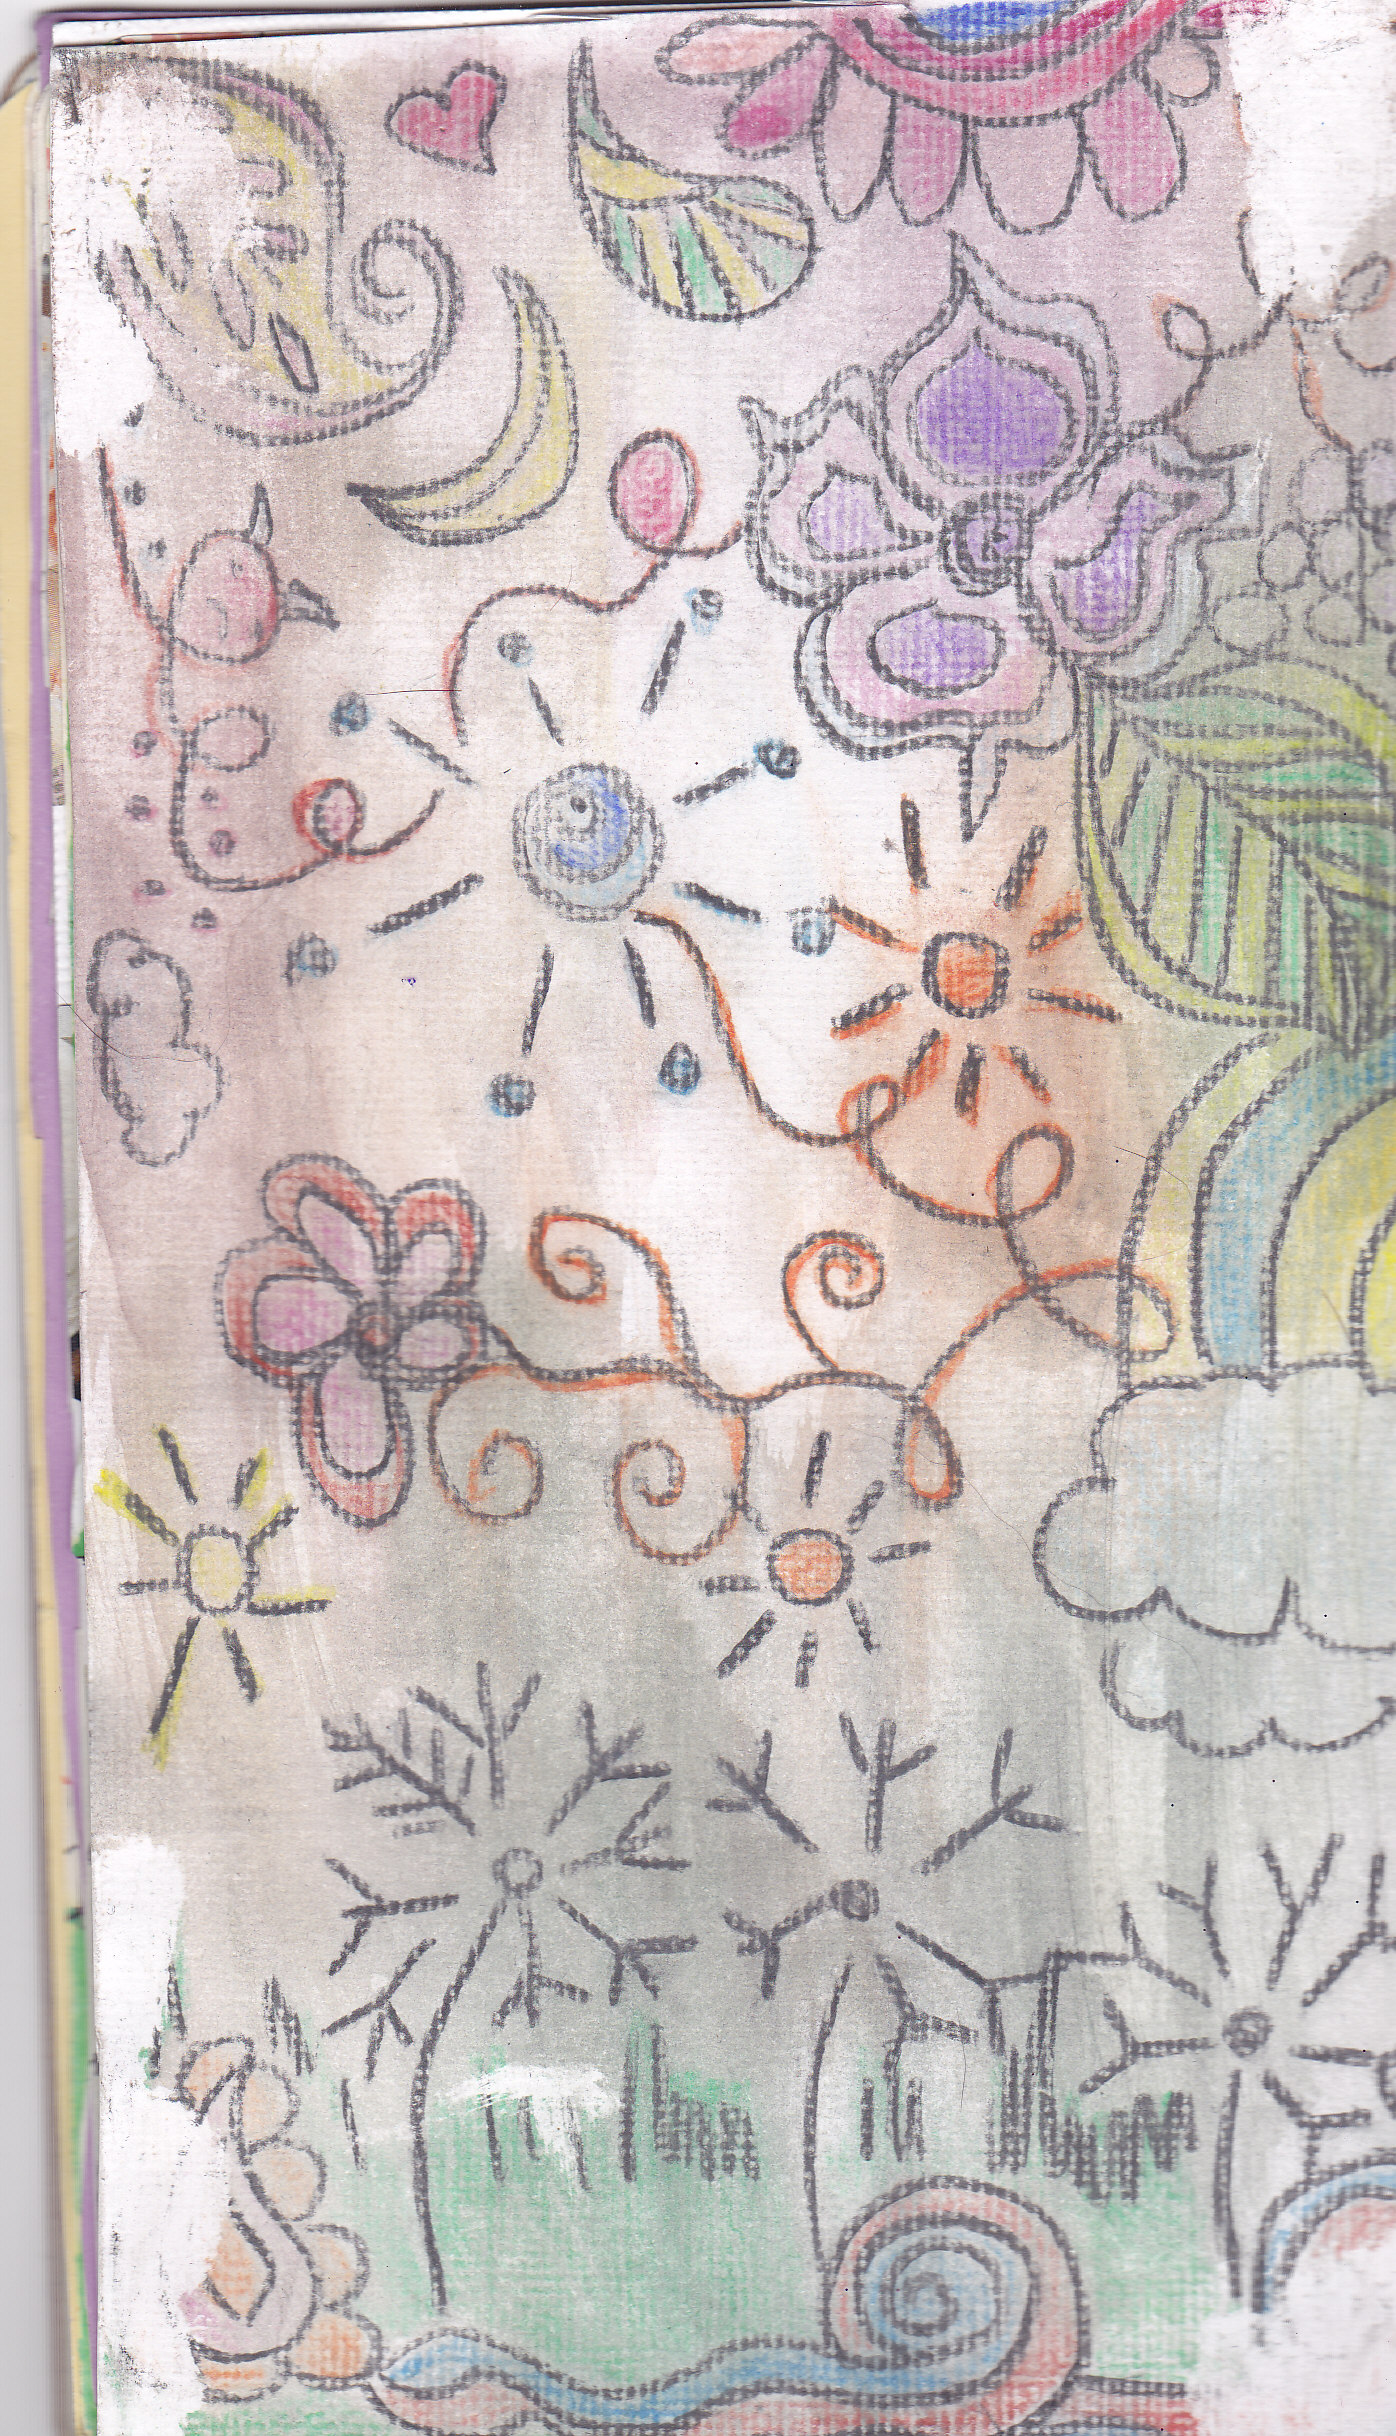 Watercolor zentangle doodles